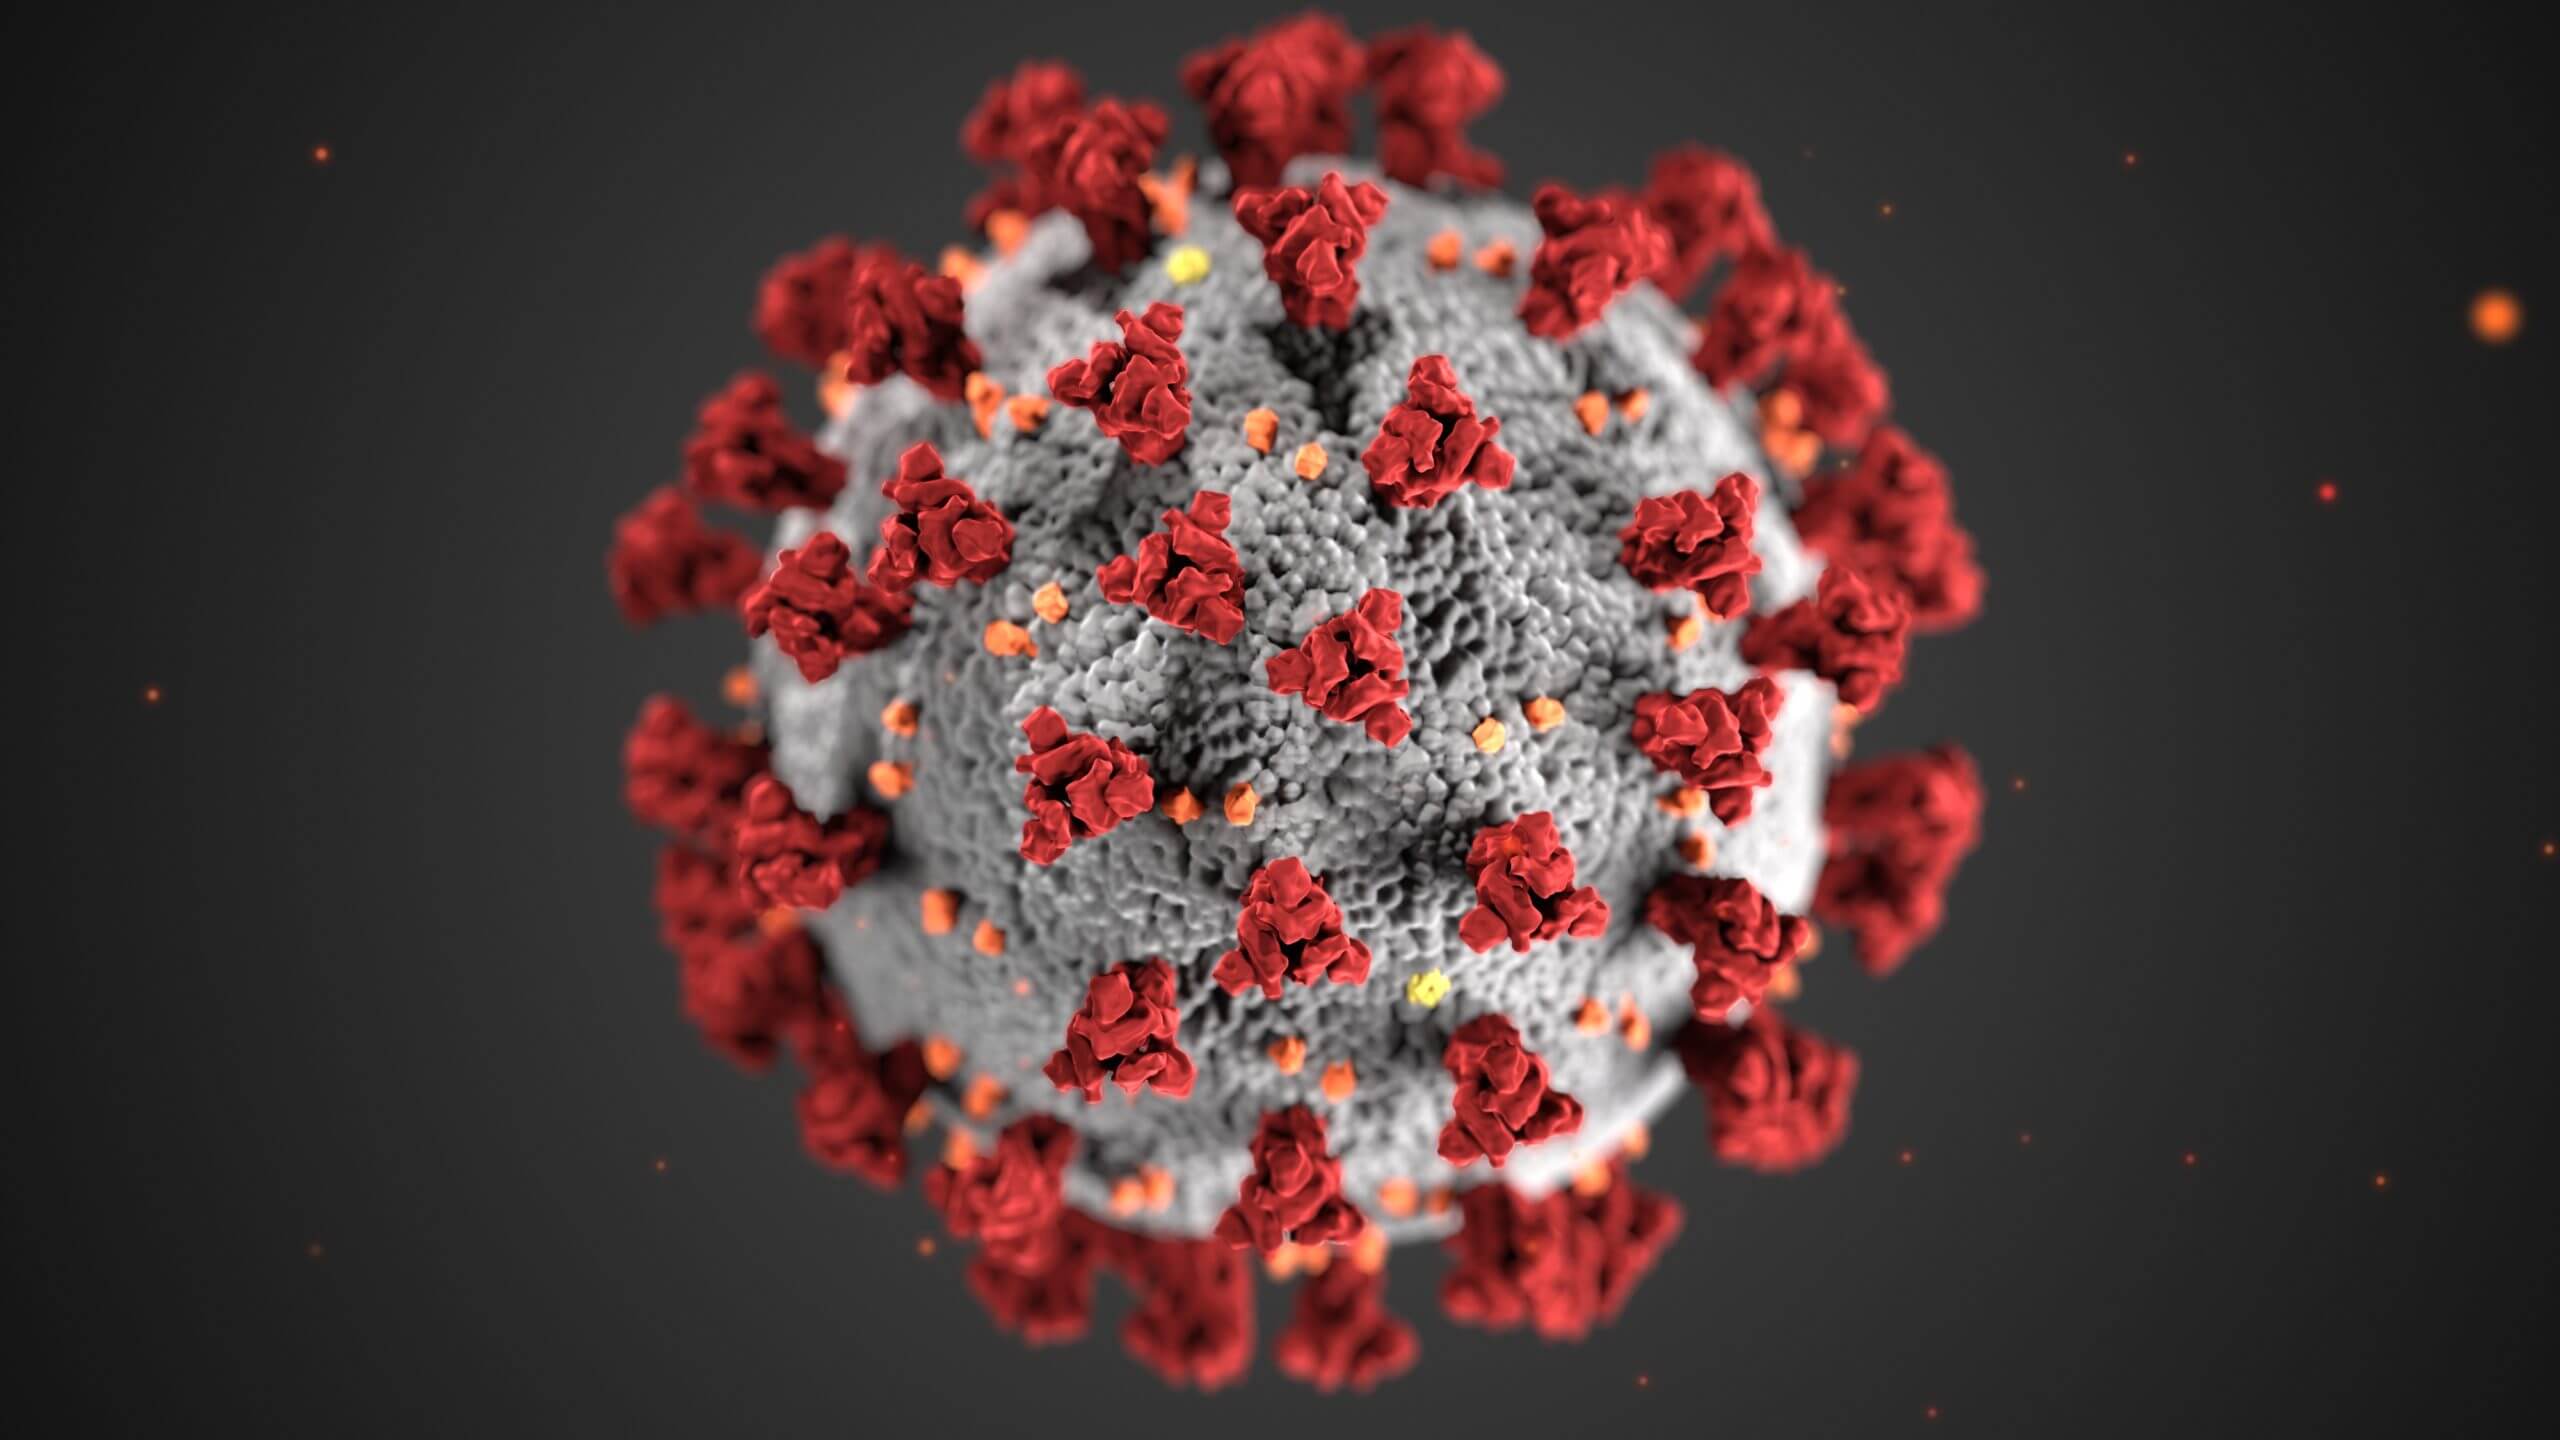 DCS reports 16 new virus cases